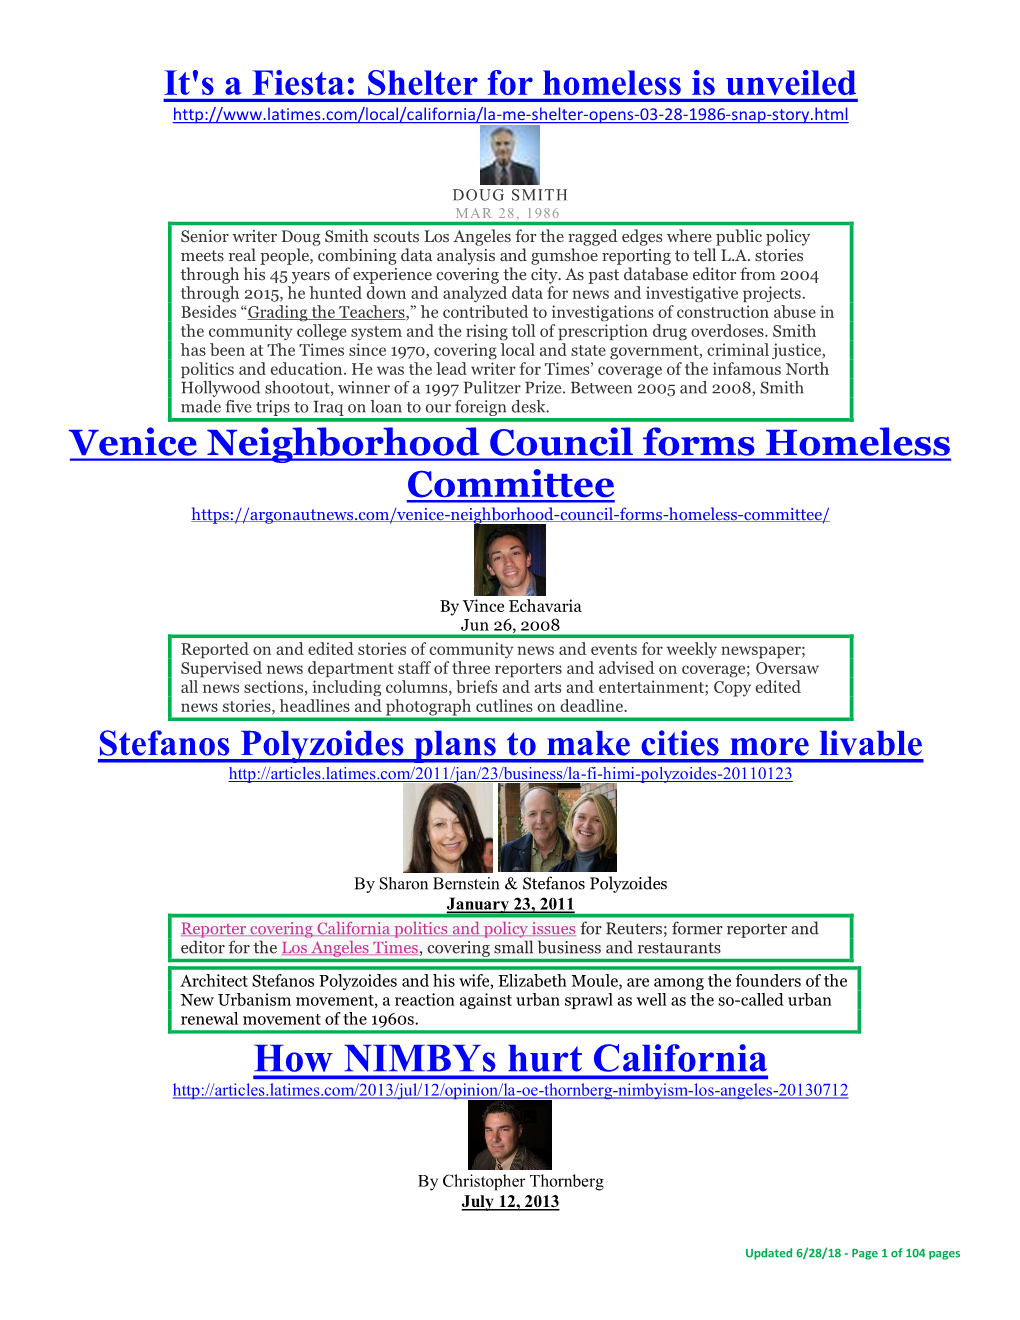 How Nimbys Hurt California